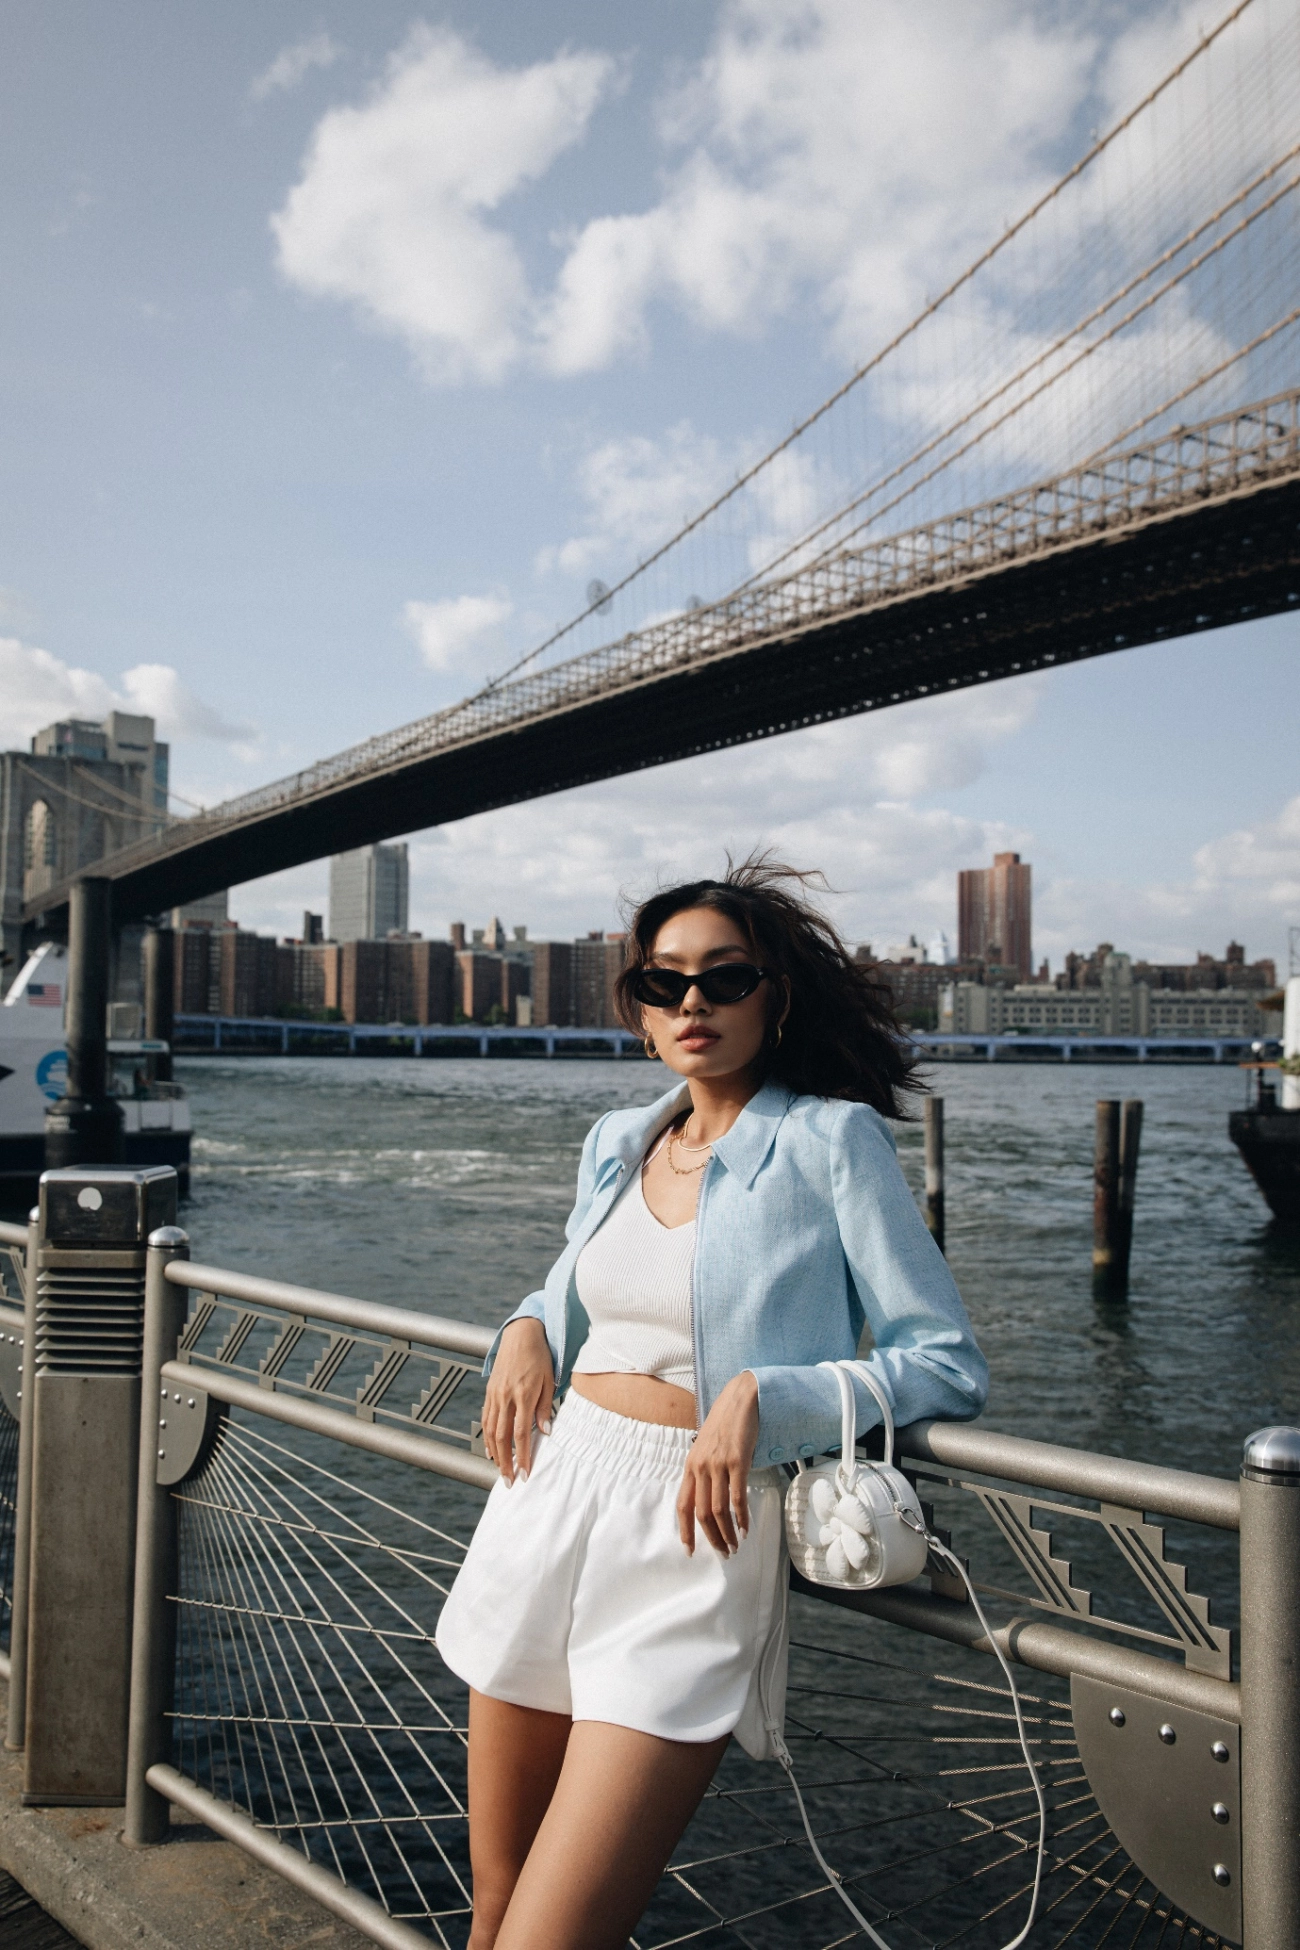 Thảo nhi lê linh ka suzana renaud mang thời trang việt đến trời tây hậu new york fashion week - 3